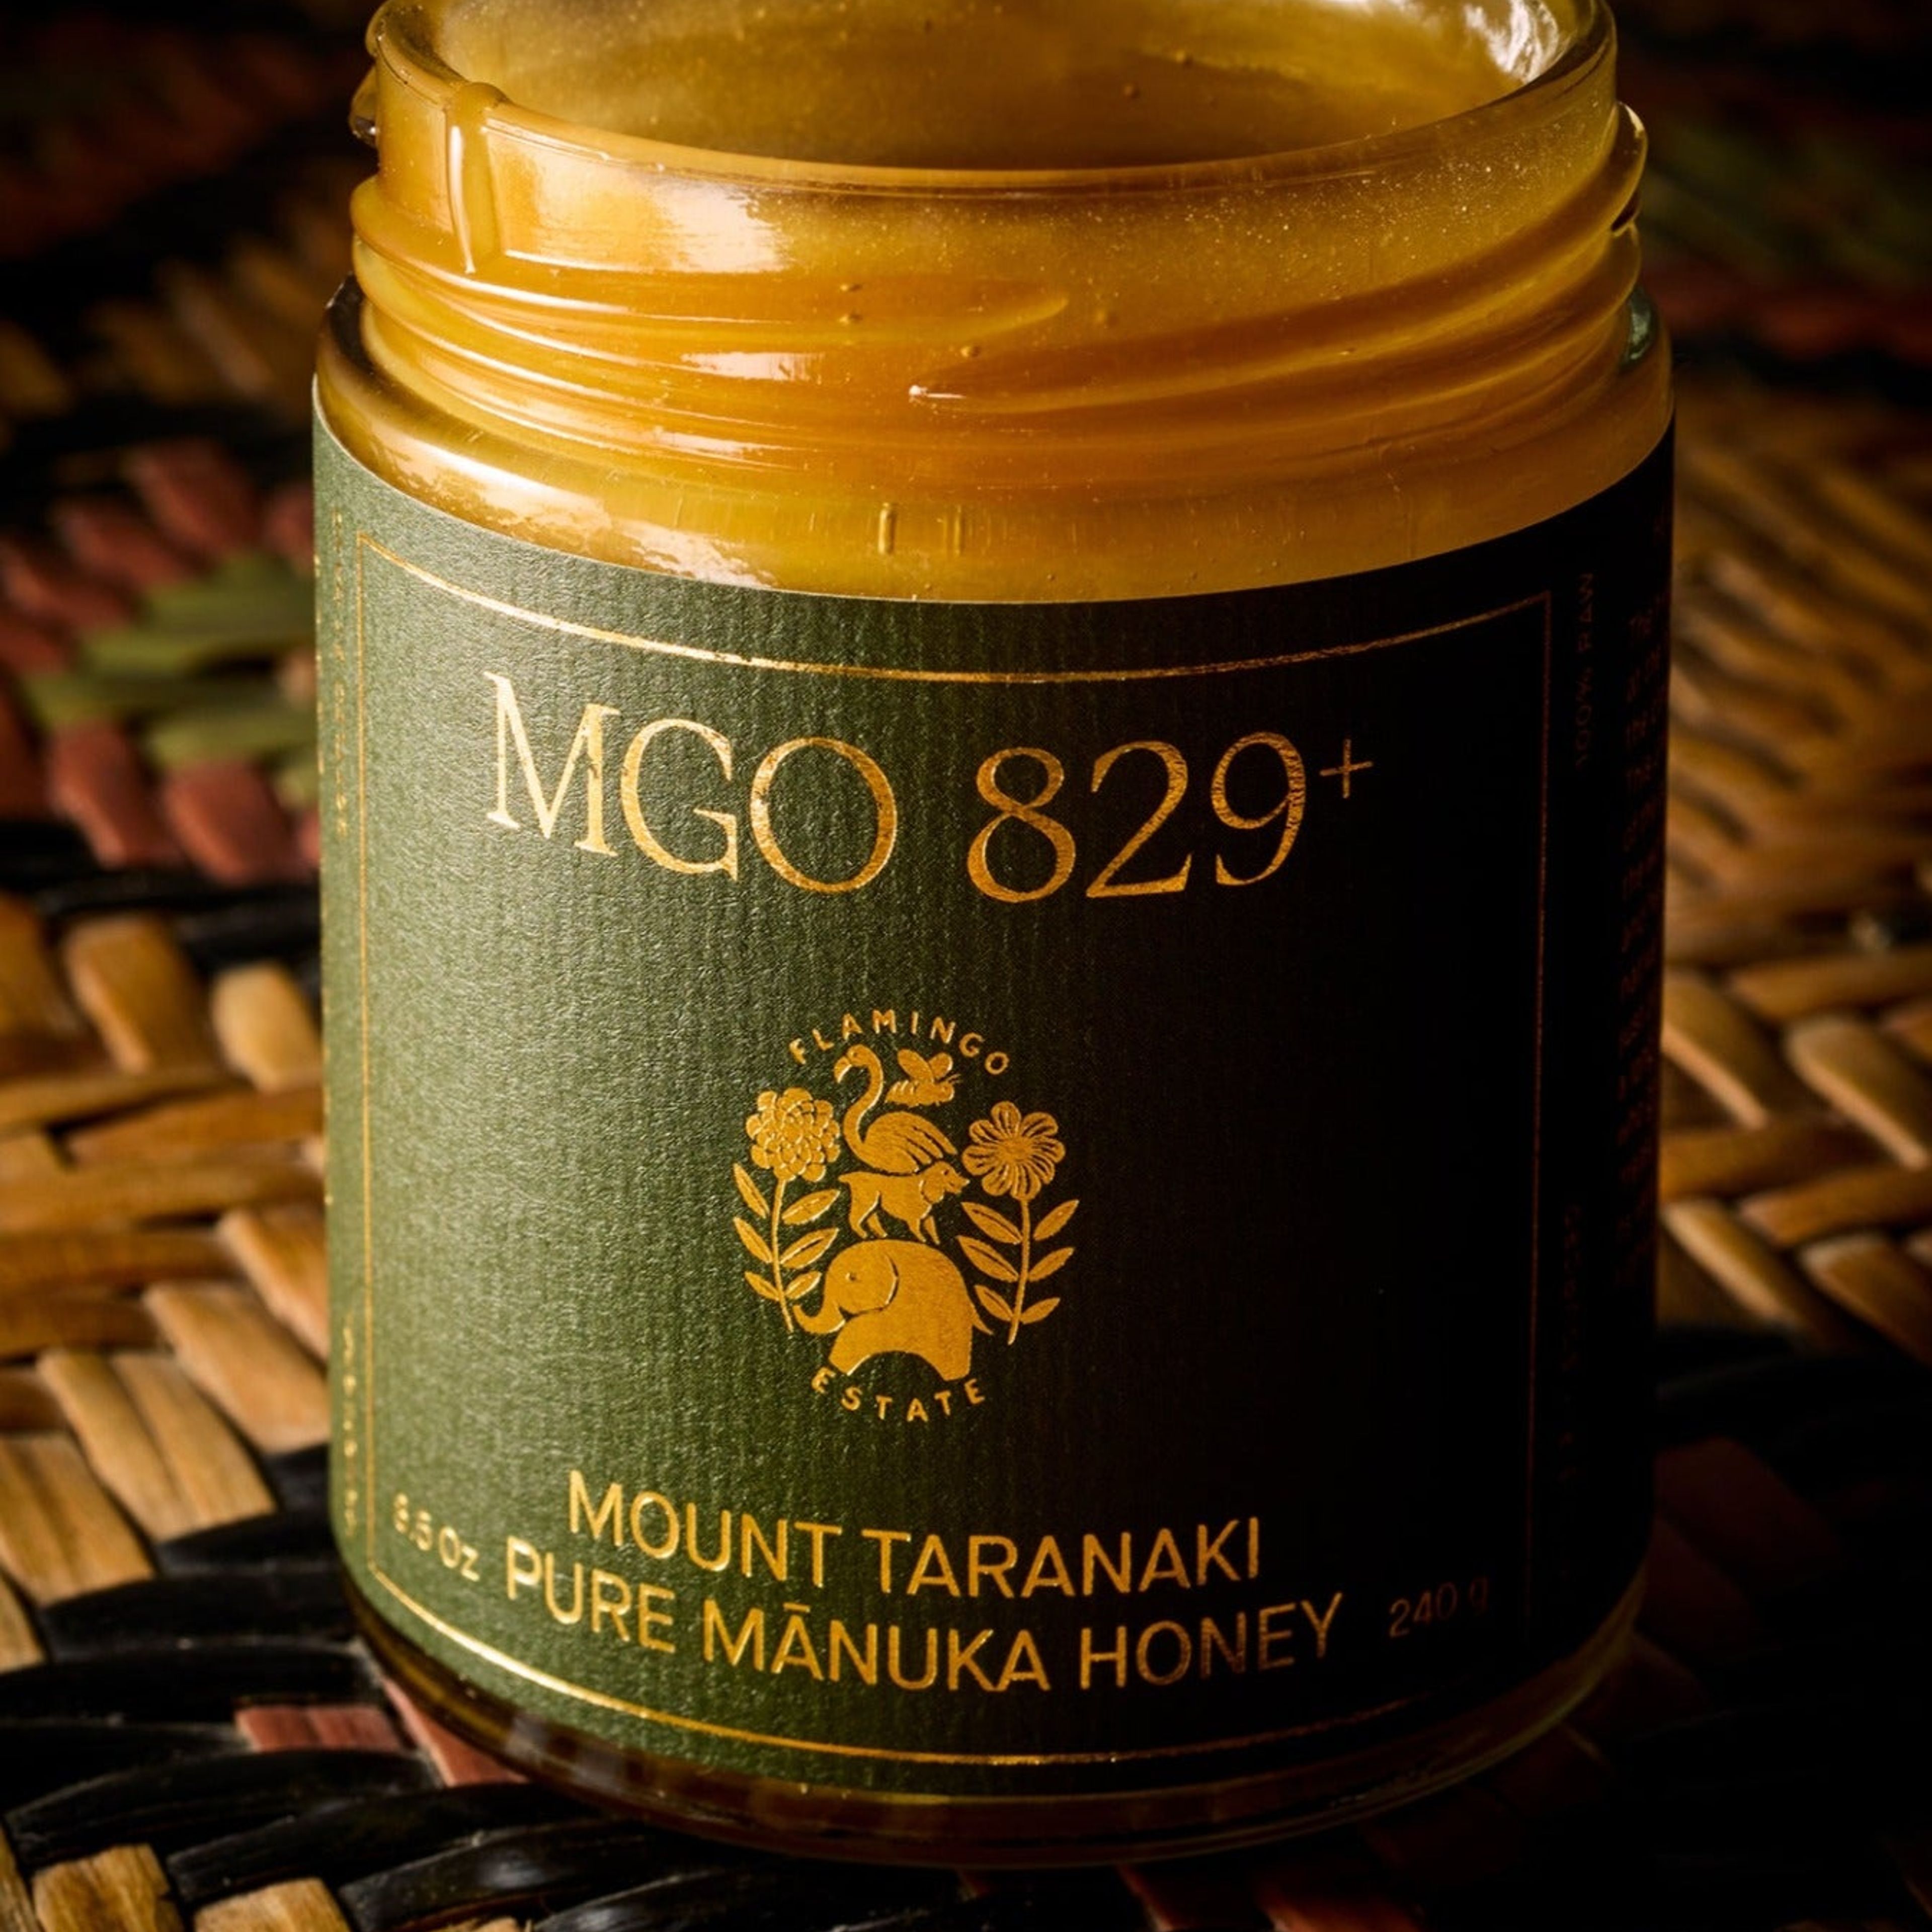 Mount Taranaki Pure Manuka Honey